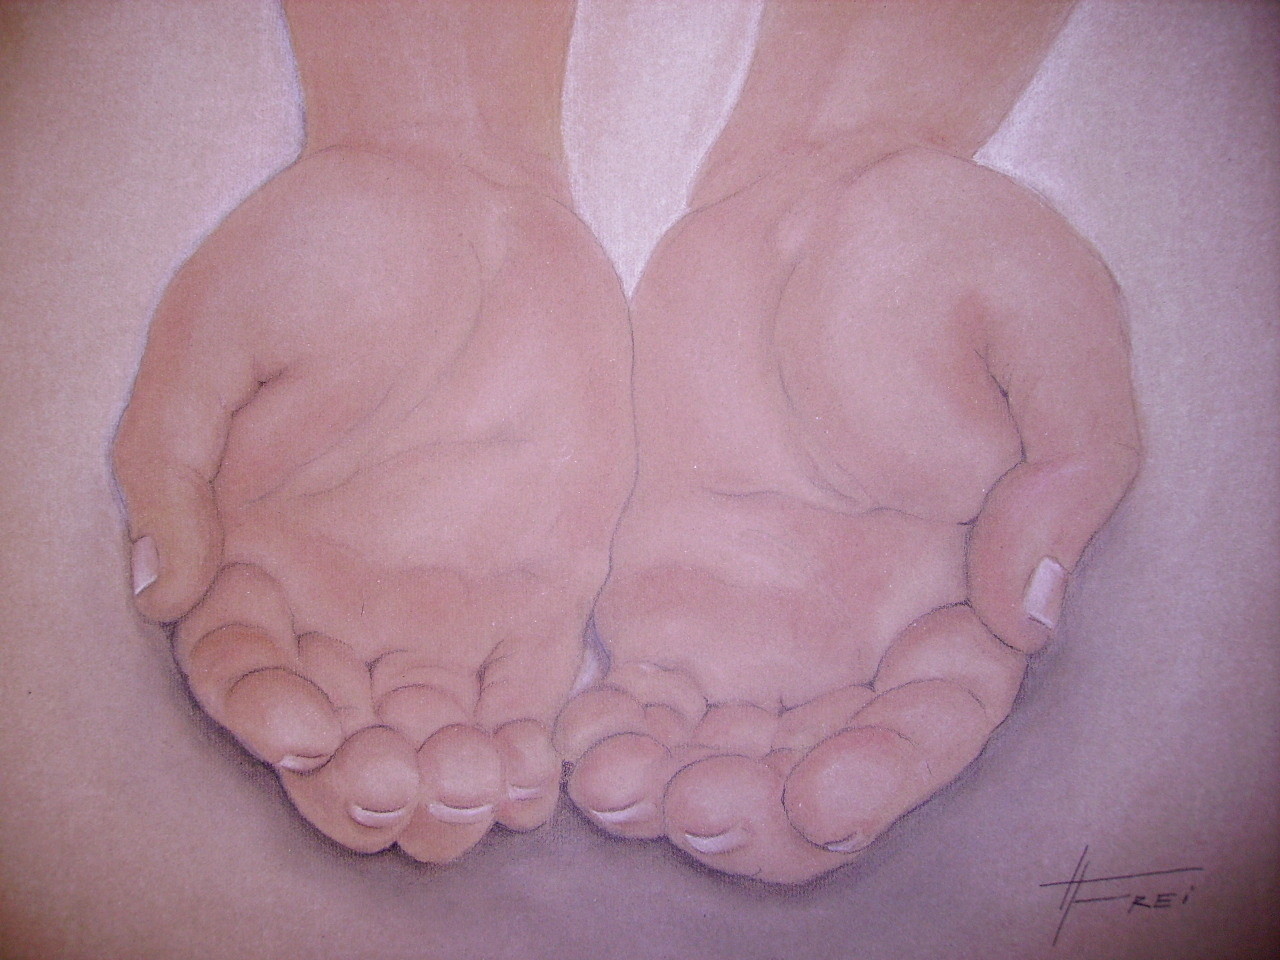 ART HFrei - "Bittende Hände" - Pastell - 2006